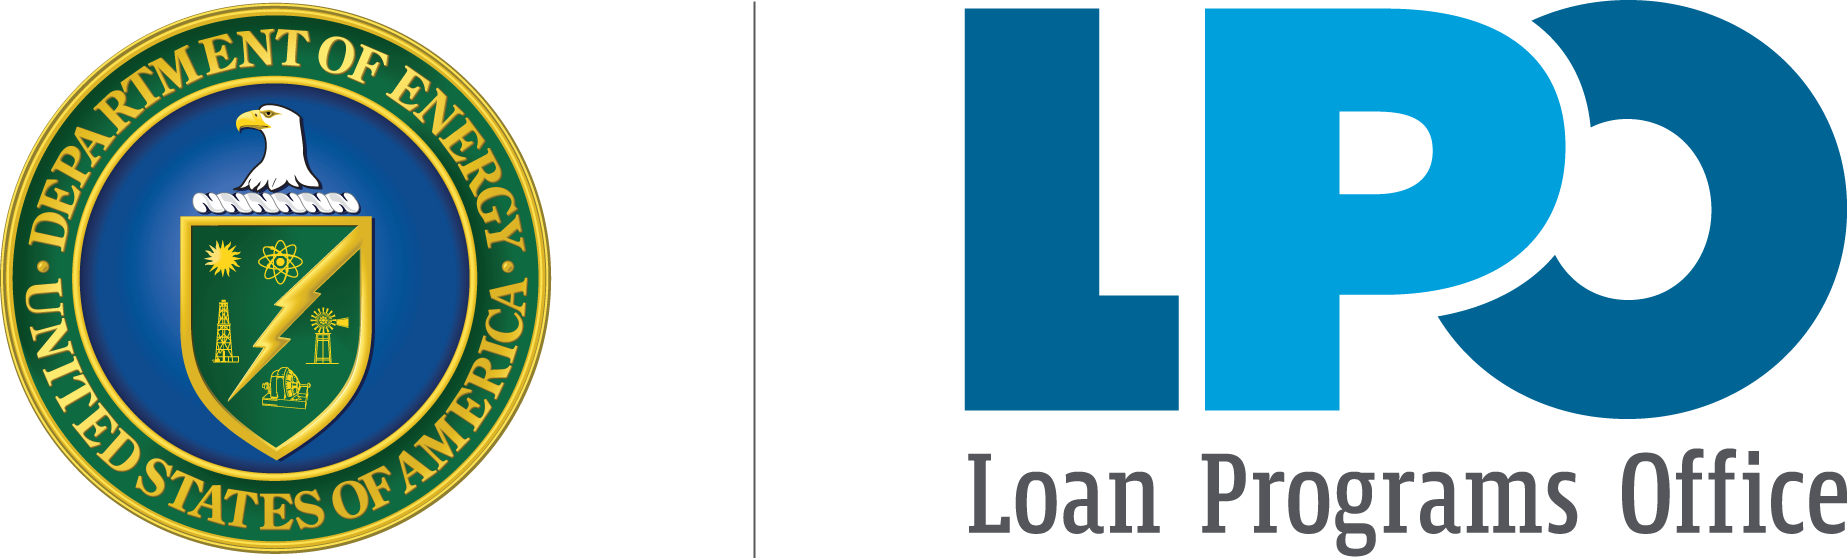 U.S. DOE Loan Programs Office logo